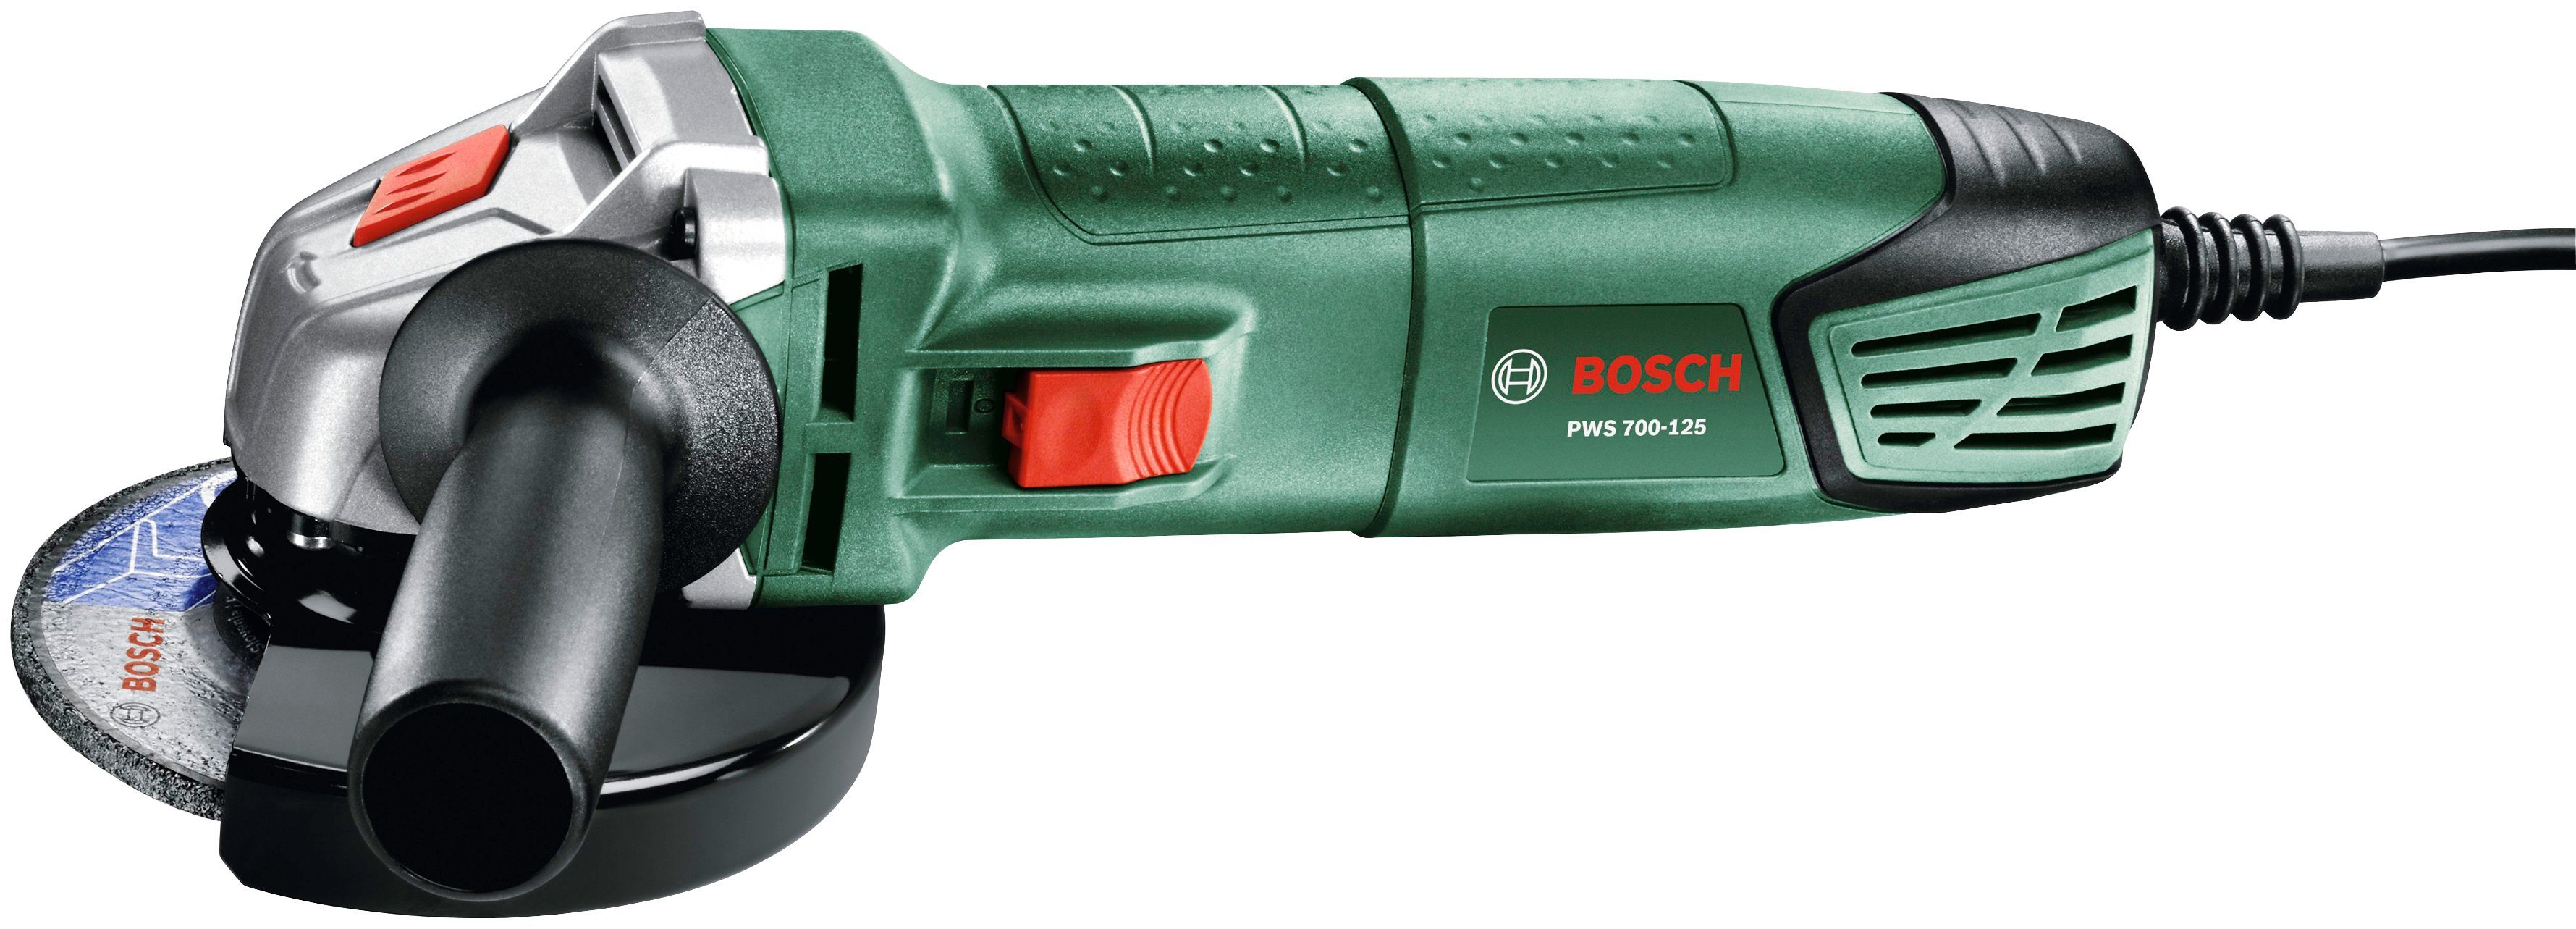 Bosch Home & Garden 700-125 Winkelschleifer PWS